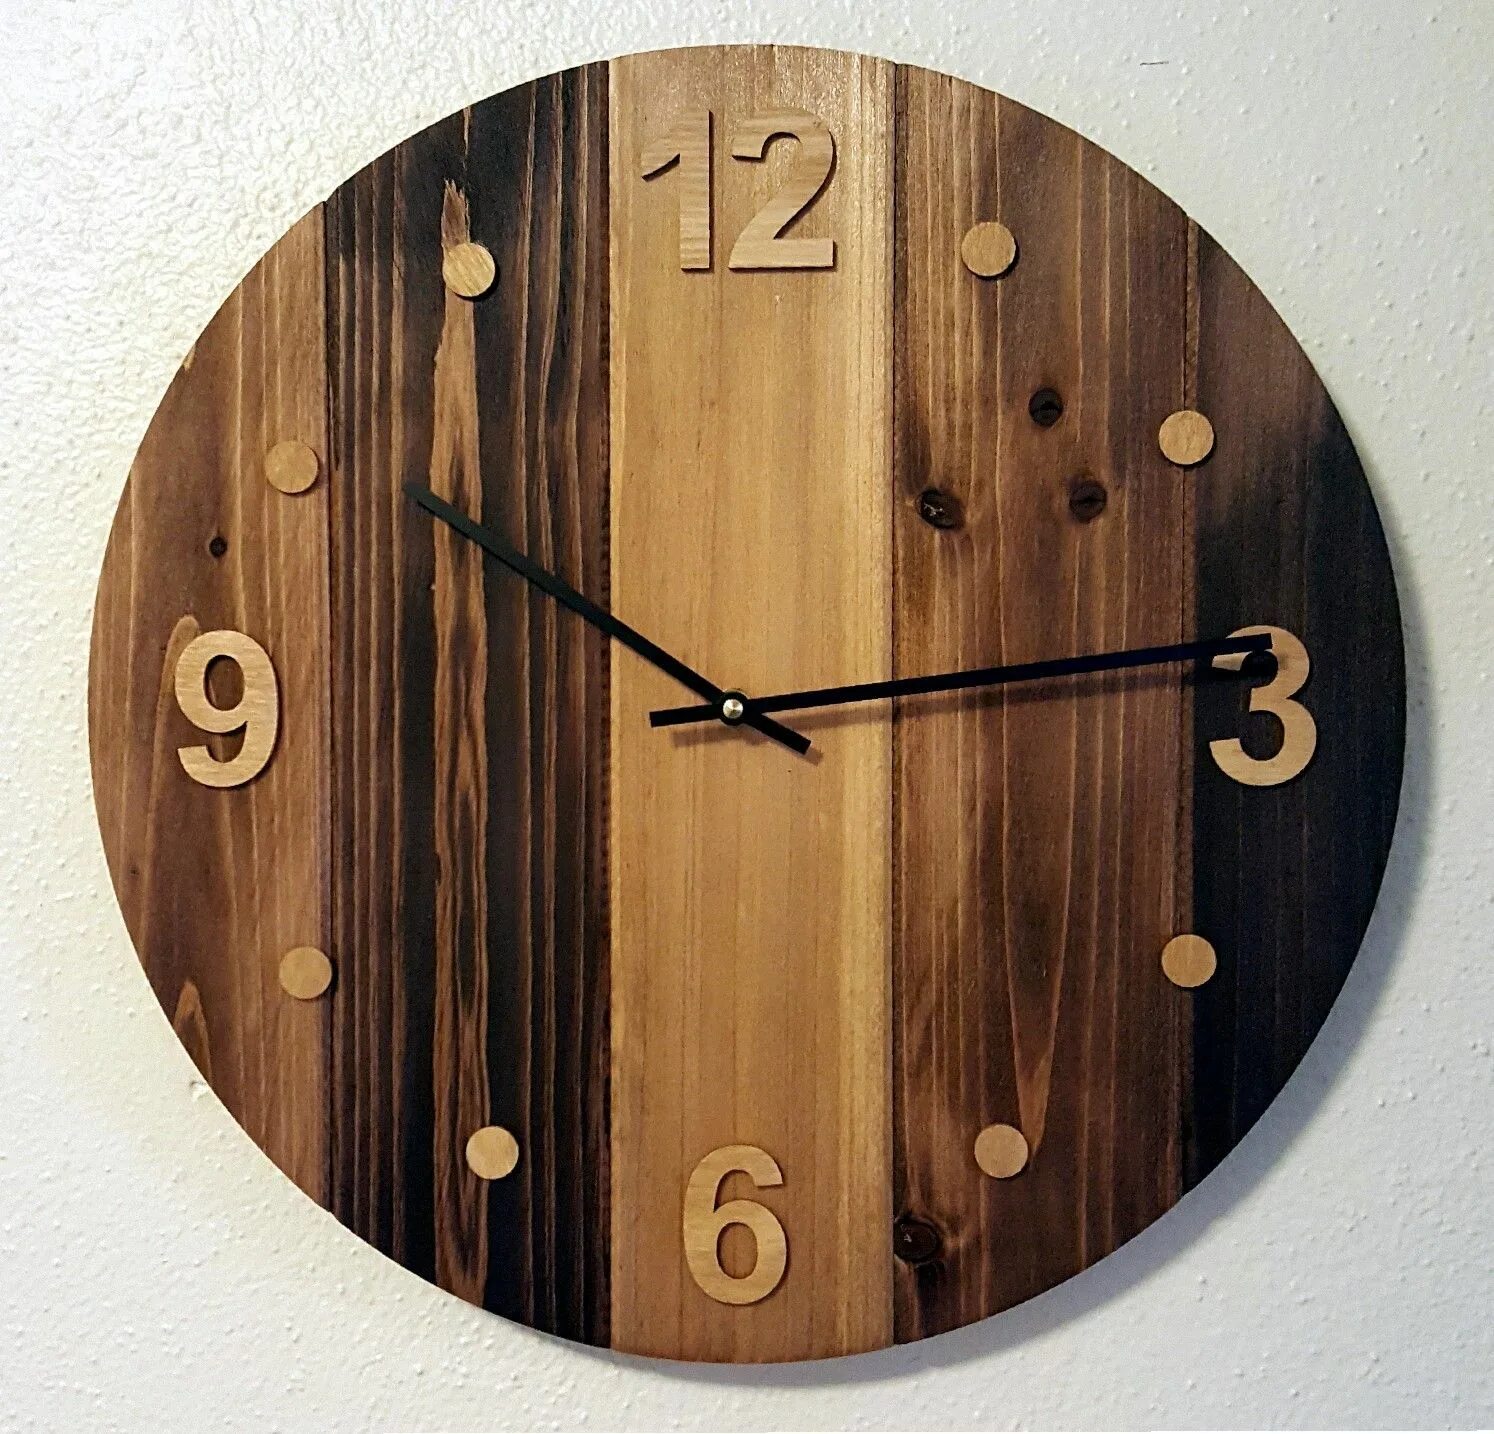 Вторая жизнь часов. Часы из дерева. Часы настенные деревянные. Необычные настенные часы из дерева. Часы из дерева настенные.